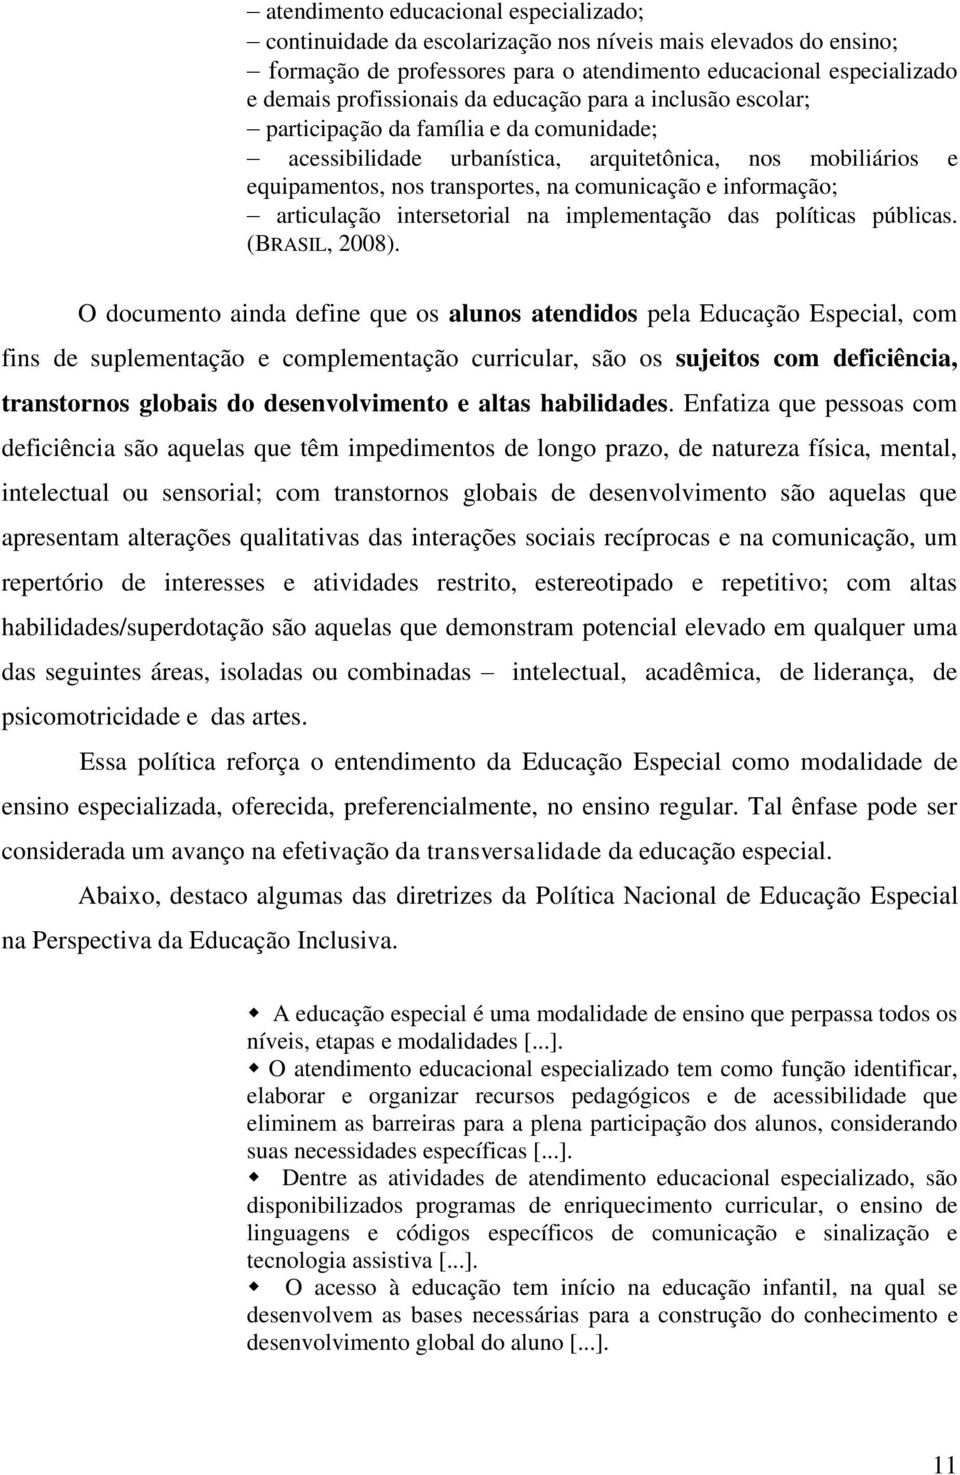 articulação intersetorial na implementação das políticas públicas. (BRASIL, 2008).